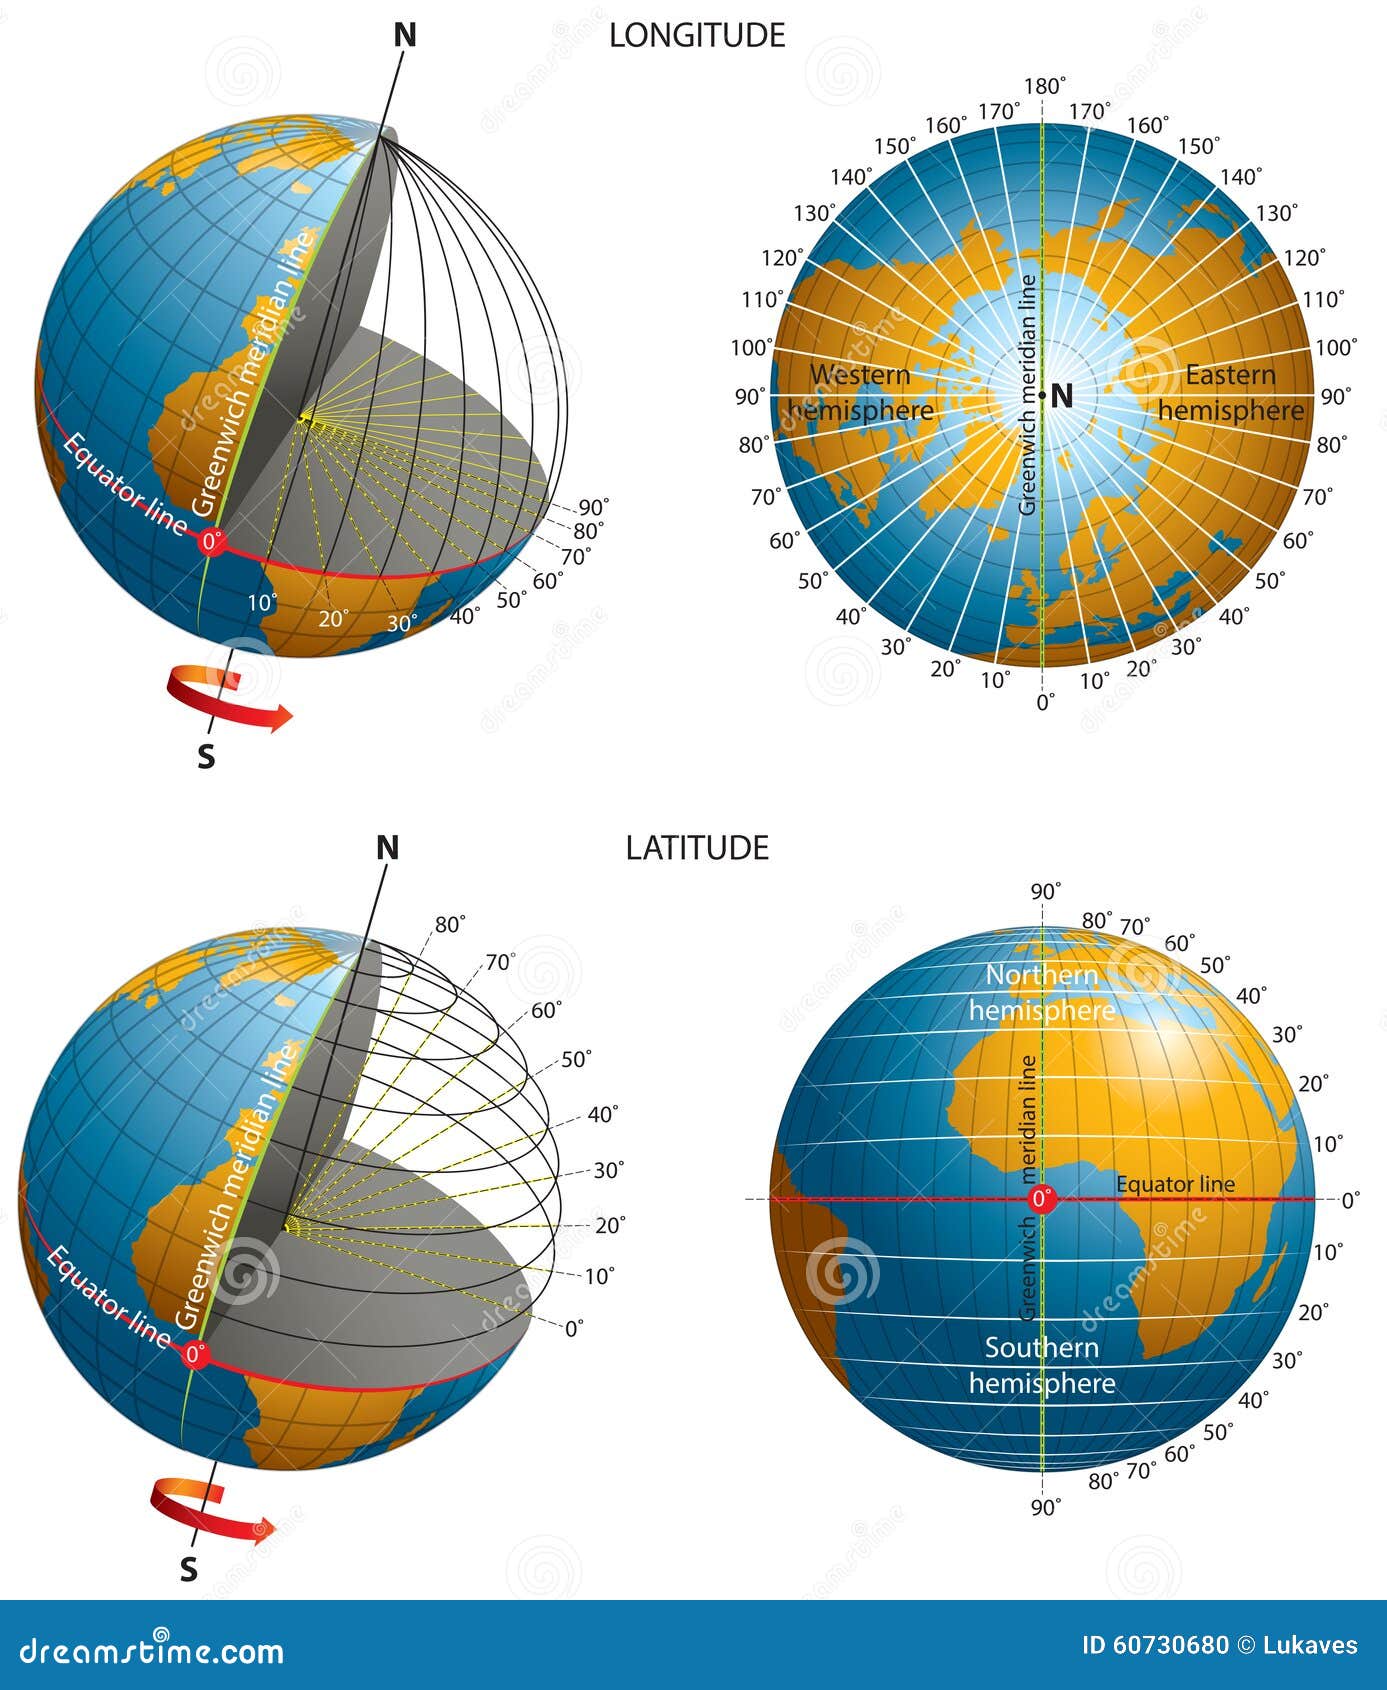 latitude-longitude-coordinates